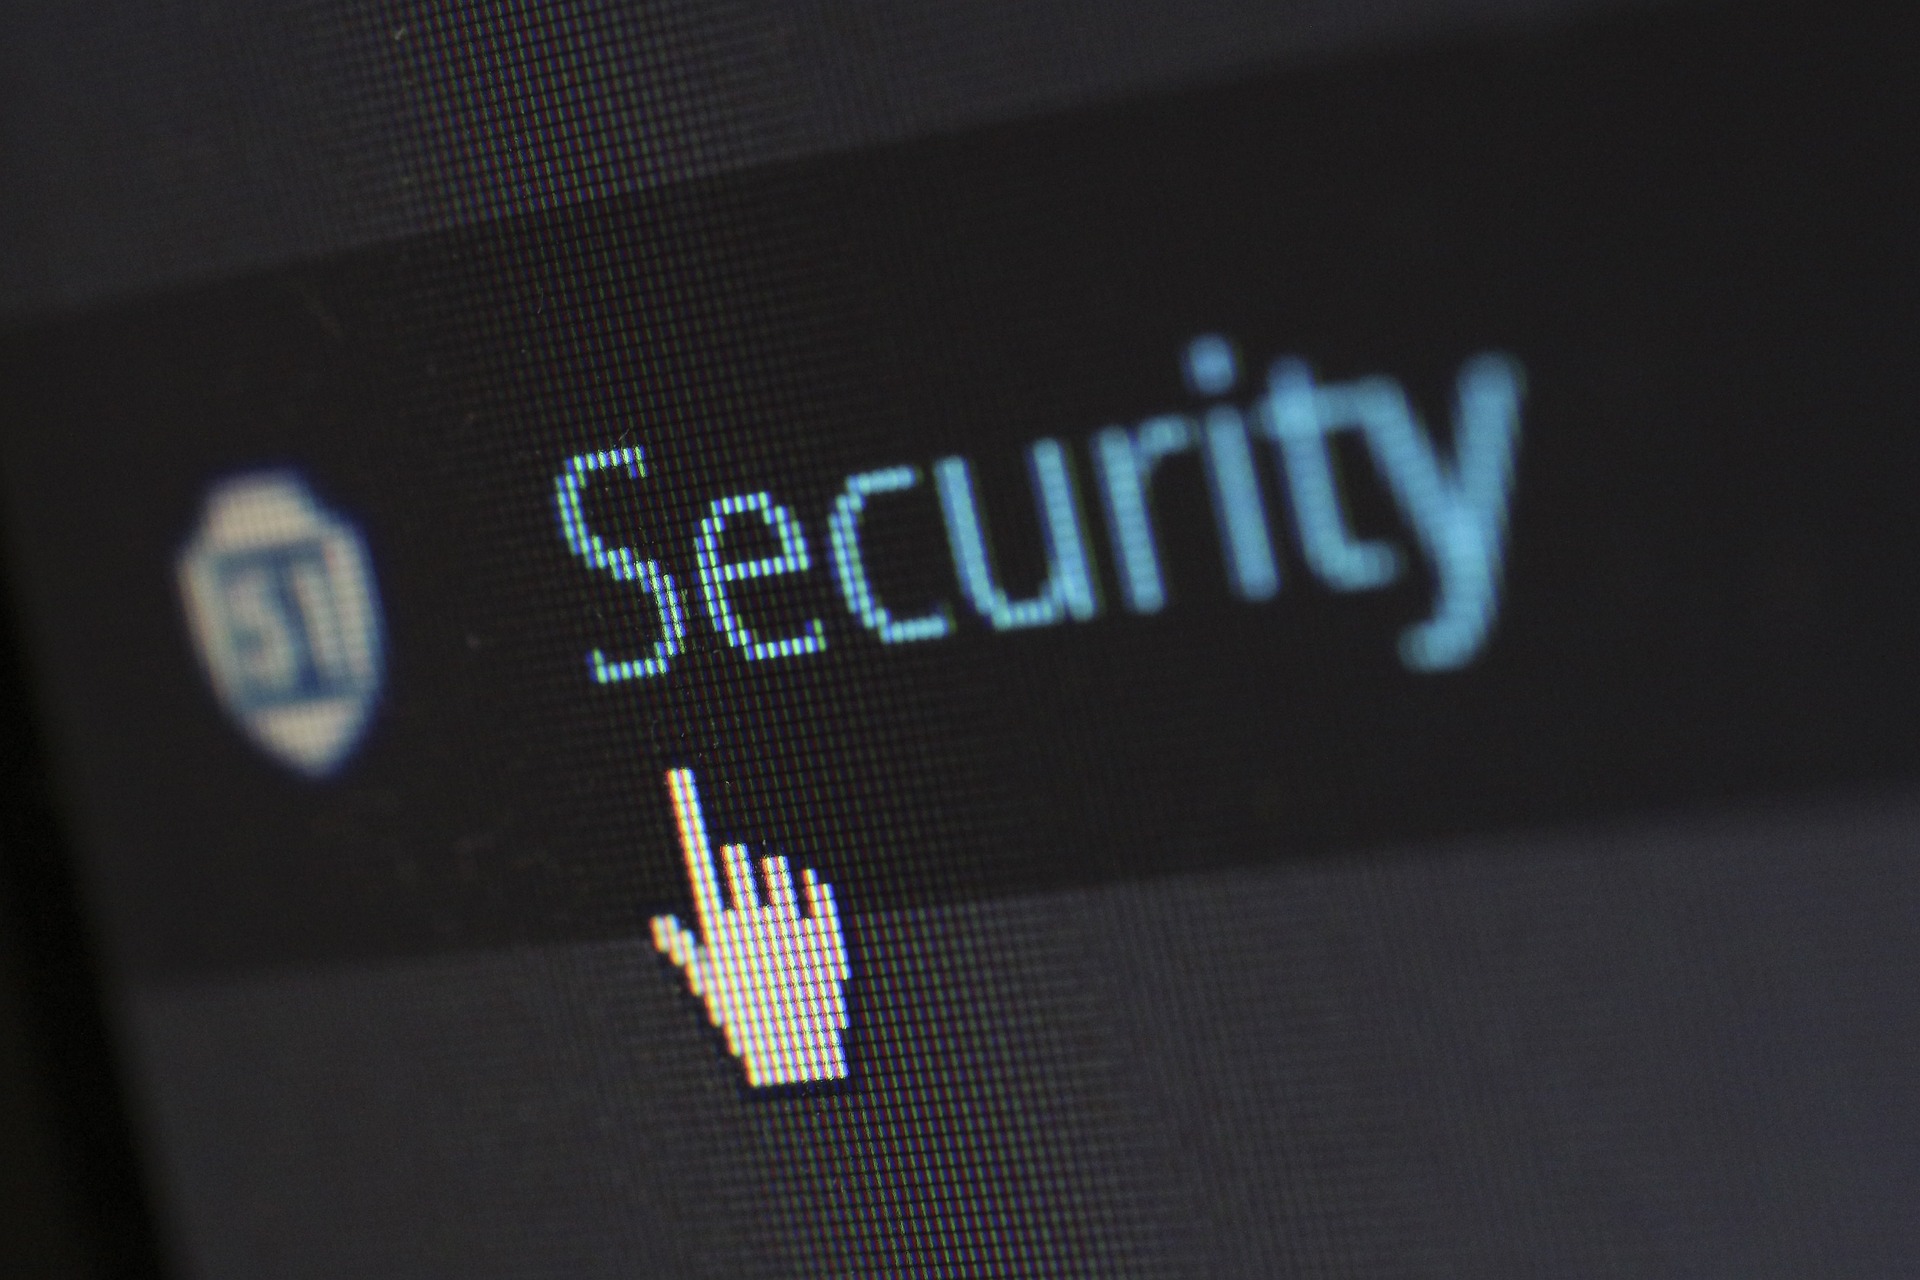 Cursor in Gestalt eine ausgestreckten Zeigefingers zeigt auf einen Button mit dem Schriftzug "Security".auf